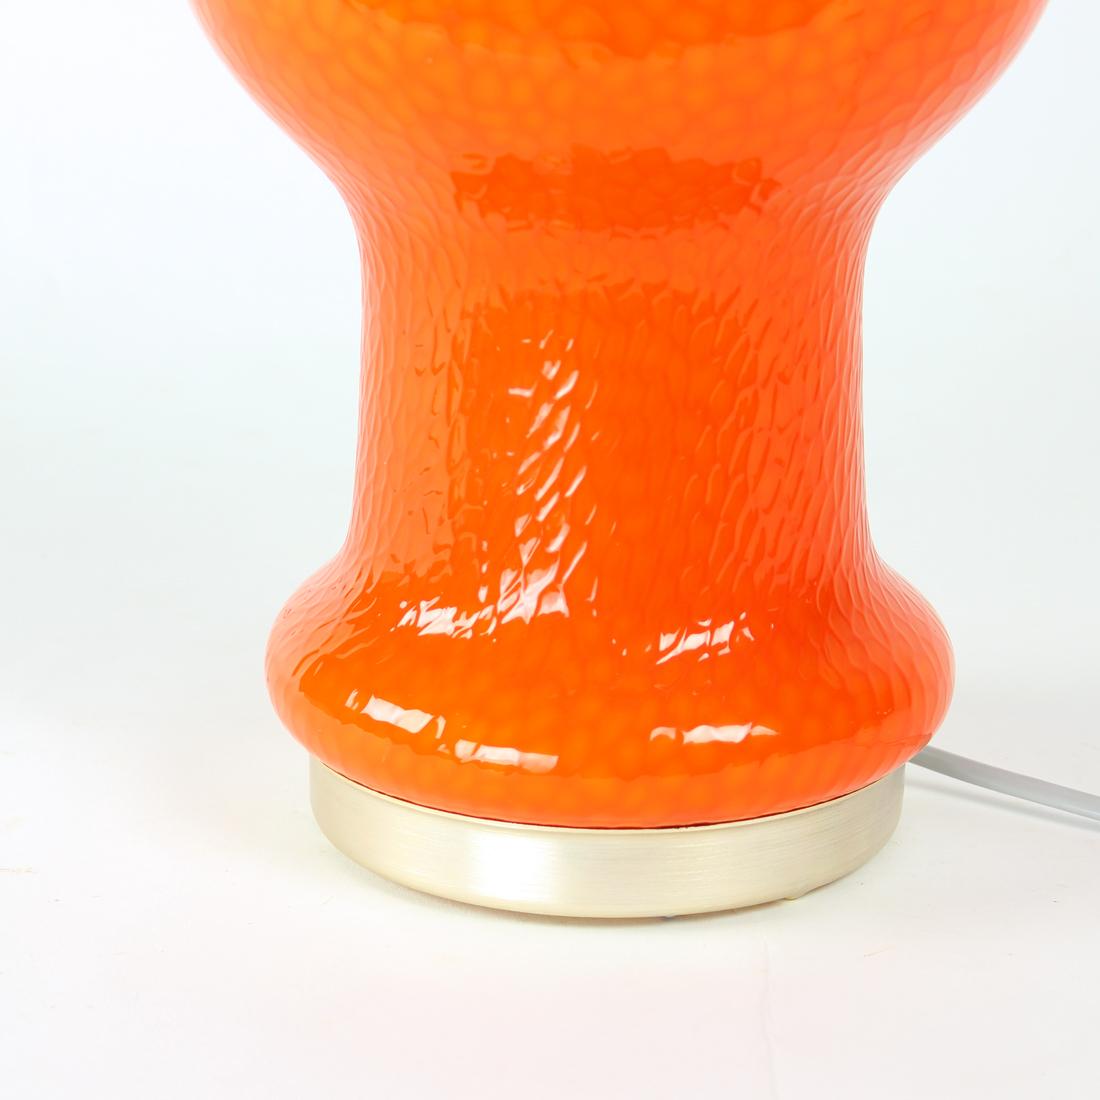 Czech Mid Century Table Lamp In Orange Opaline Glass By Stefan Tabery, Opp Jihlava, 19 For Sale